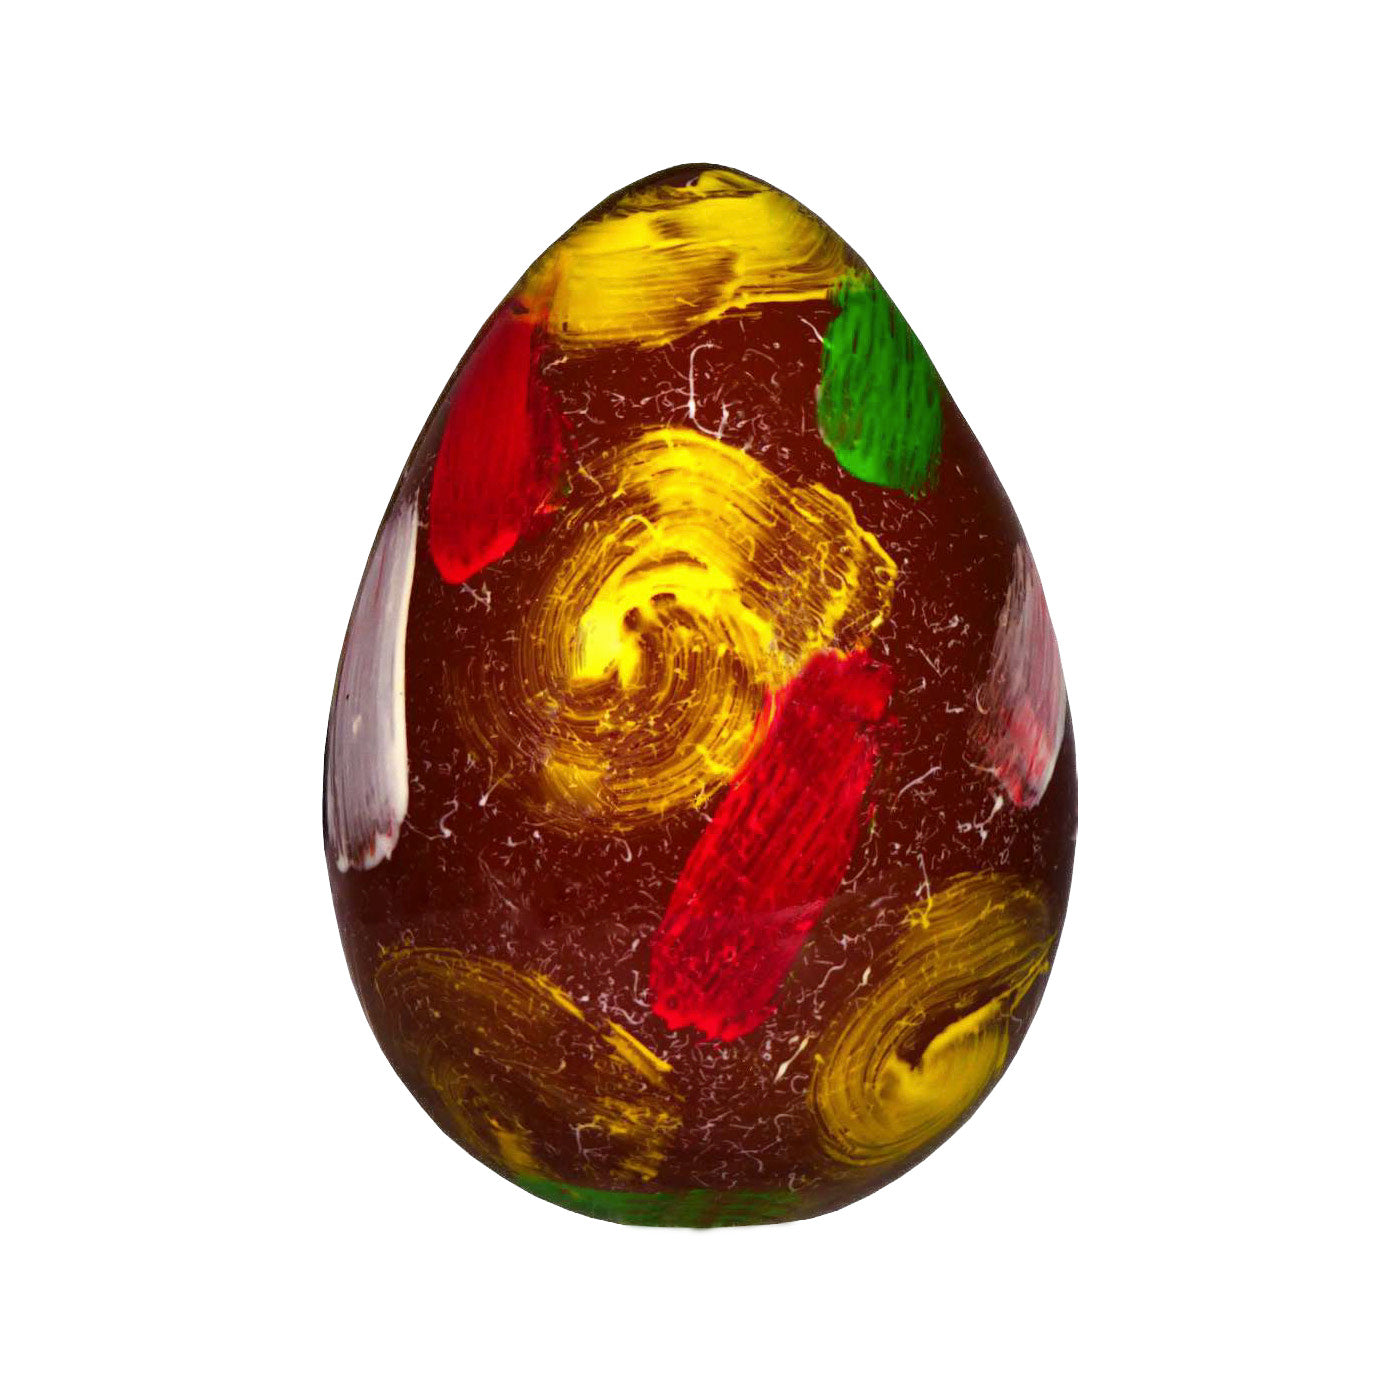 [EASTER] Handmade Egg of Dark Chocolate - Bodrato